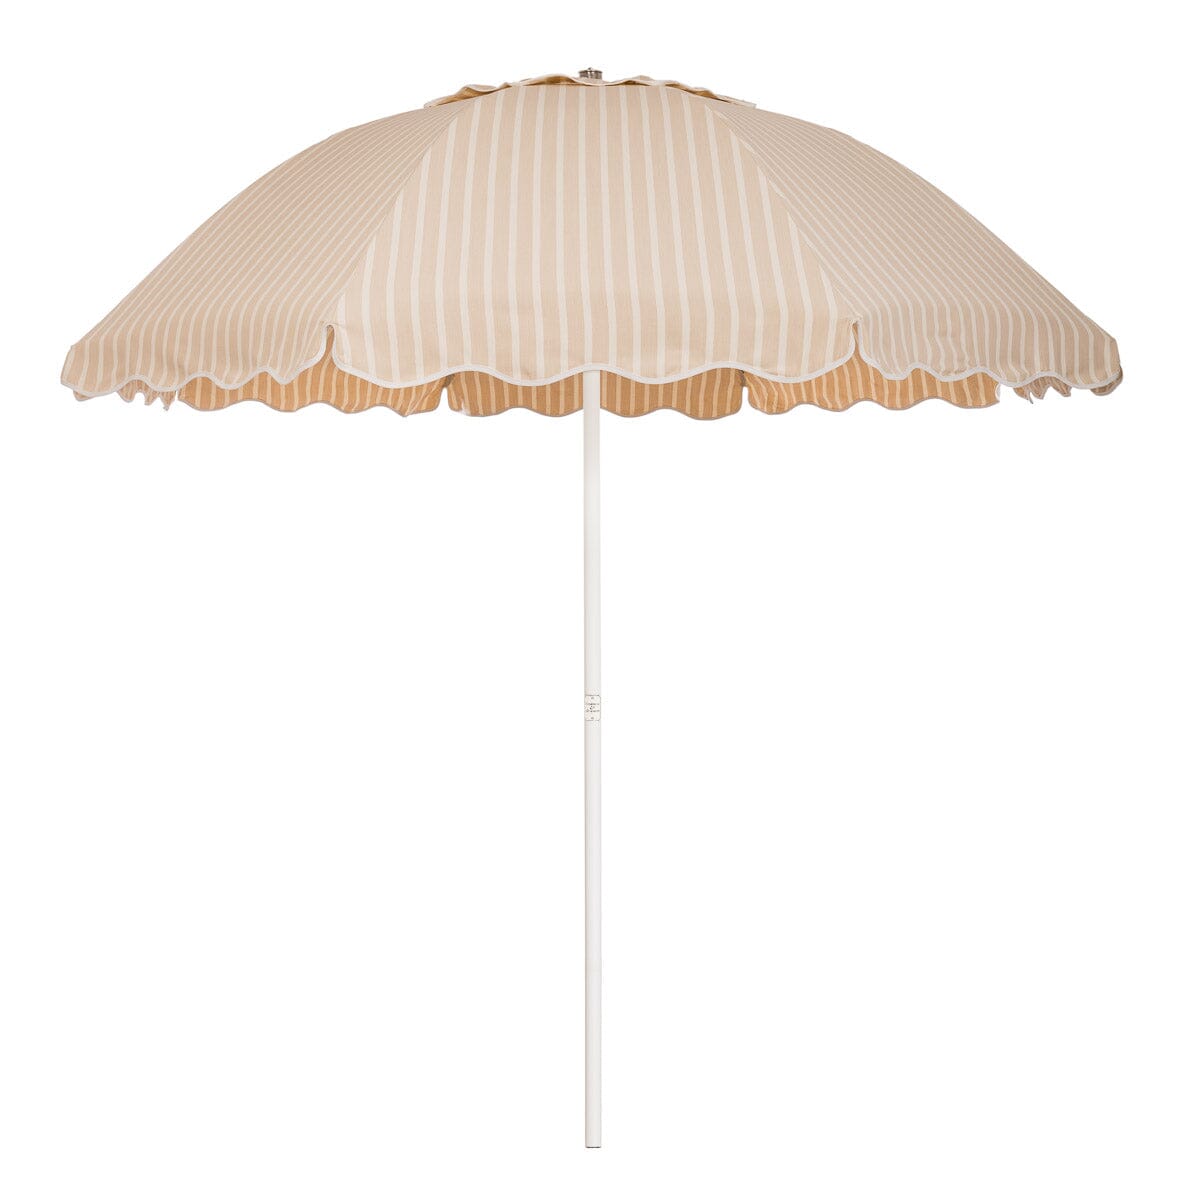 The Patio Umbrella - Monaco Natural Stripe Patio Umbrella Business & Pleasure Co 